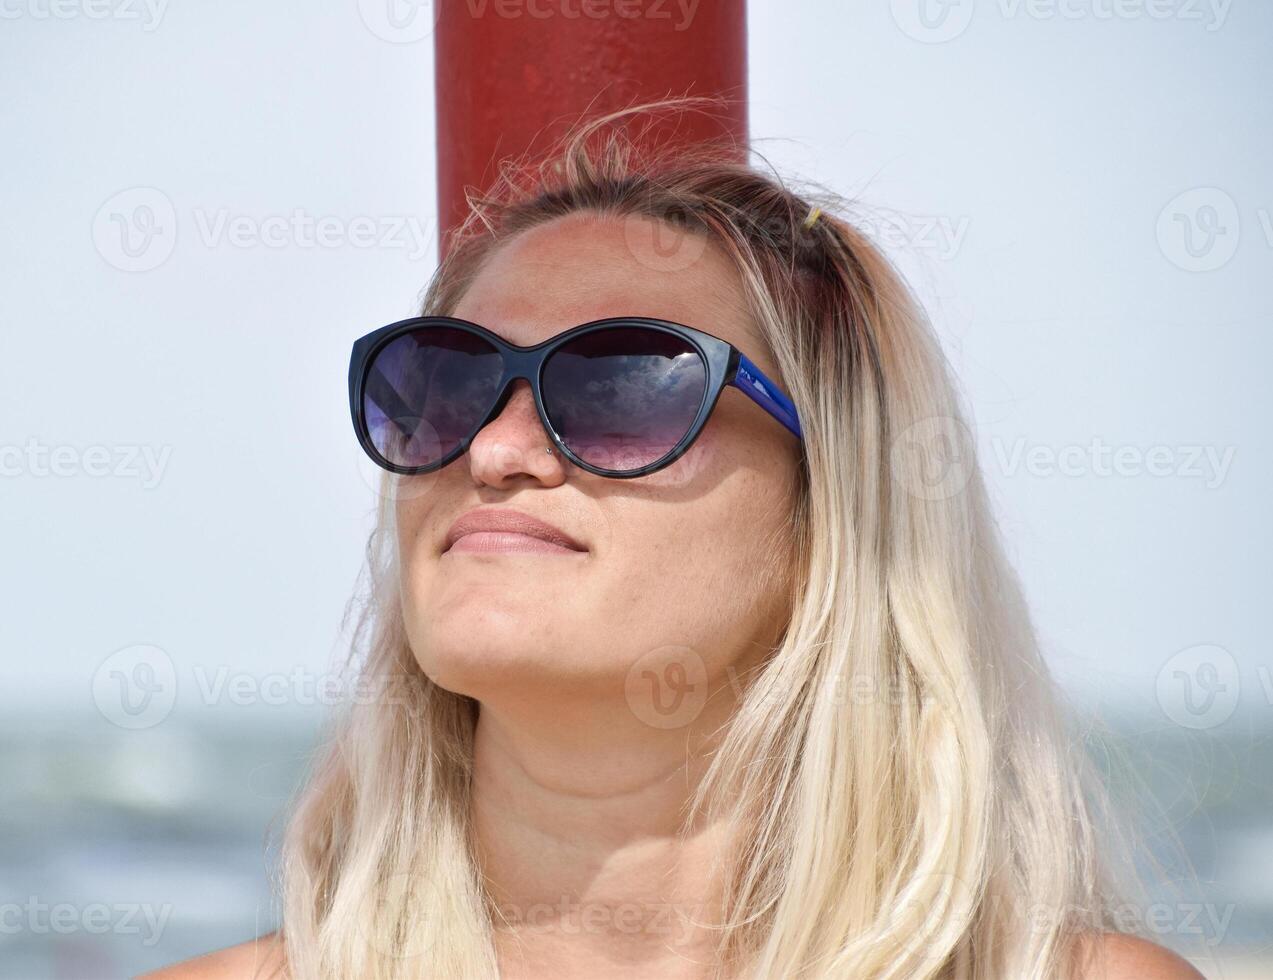 de blond i solglasögon på de strand. flicka vilar på de strand foto